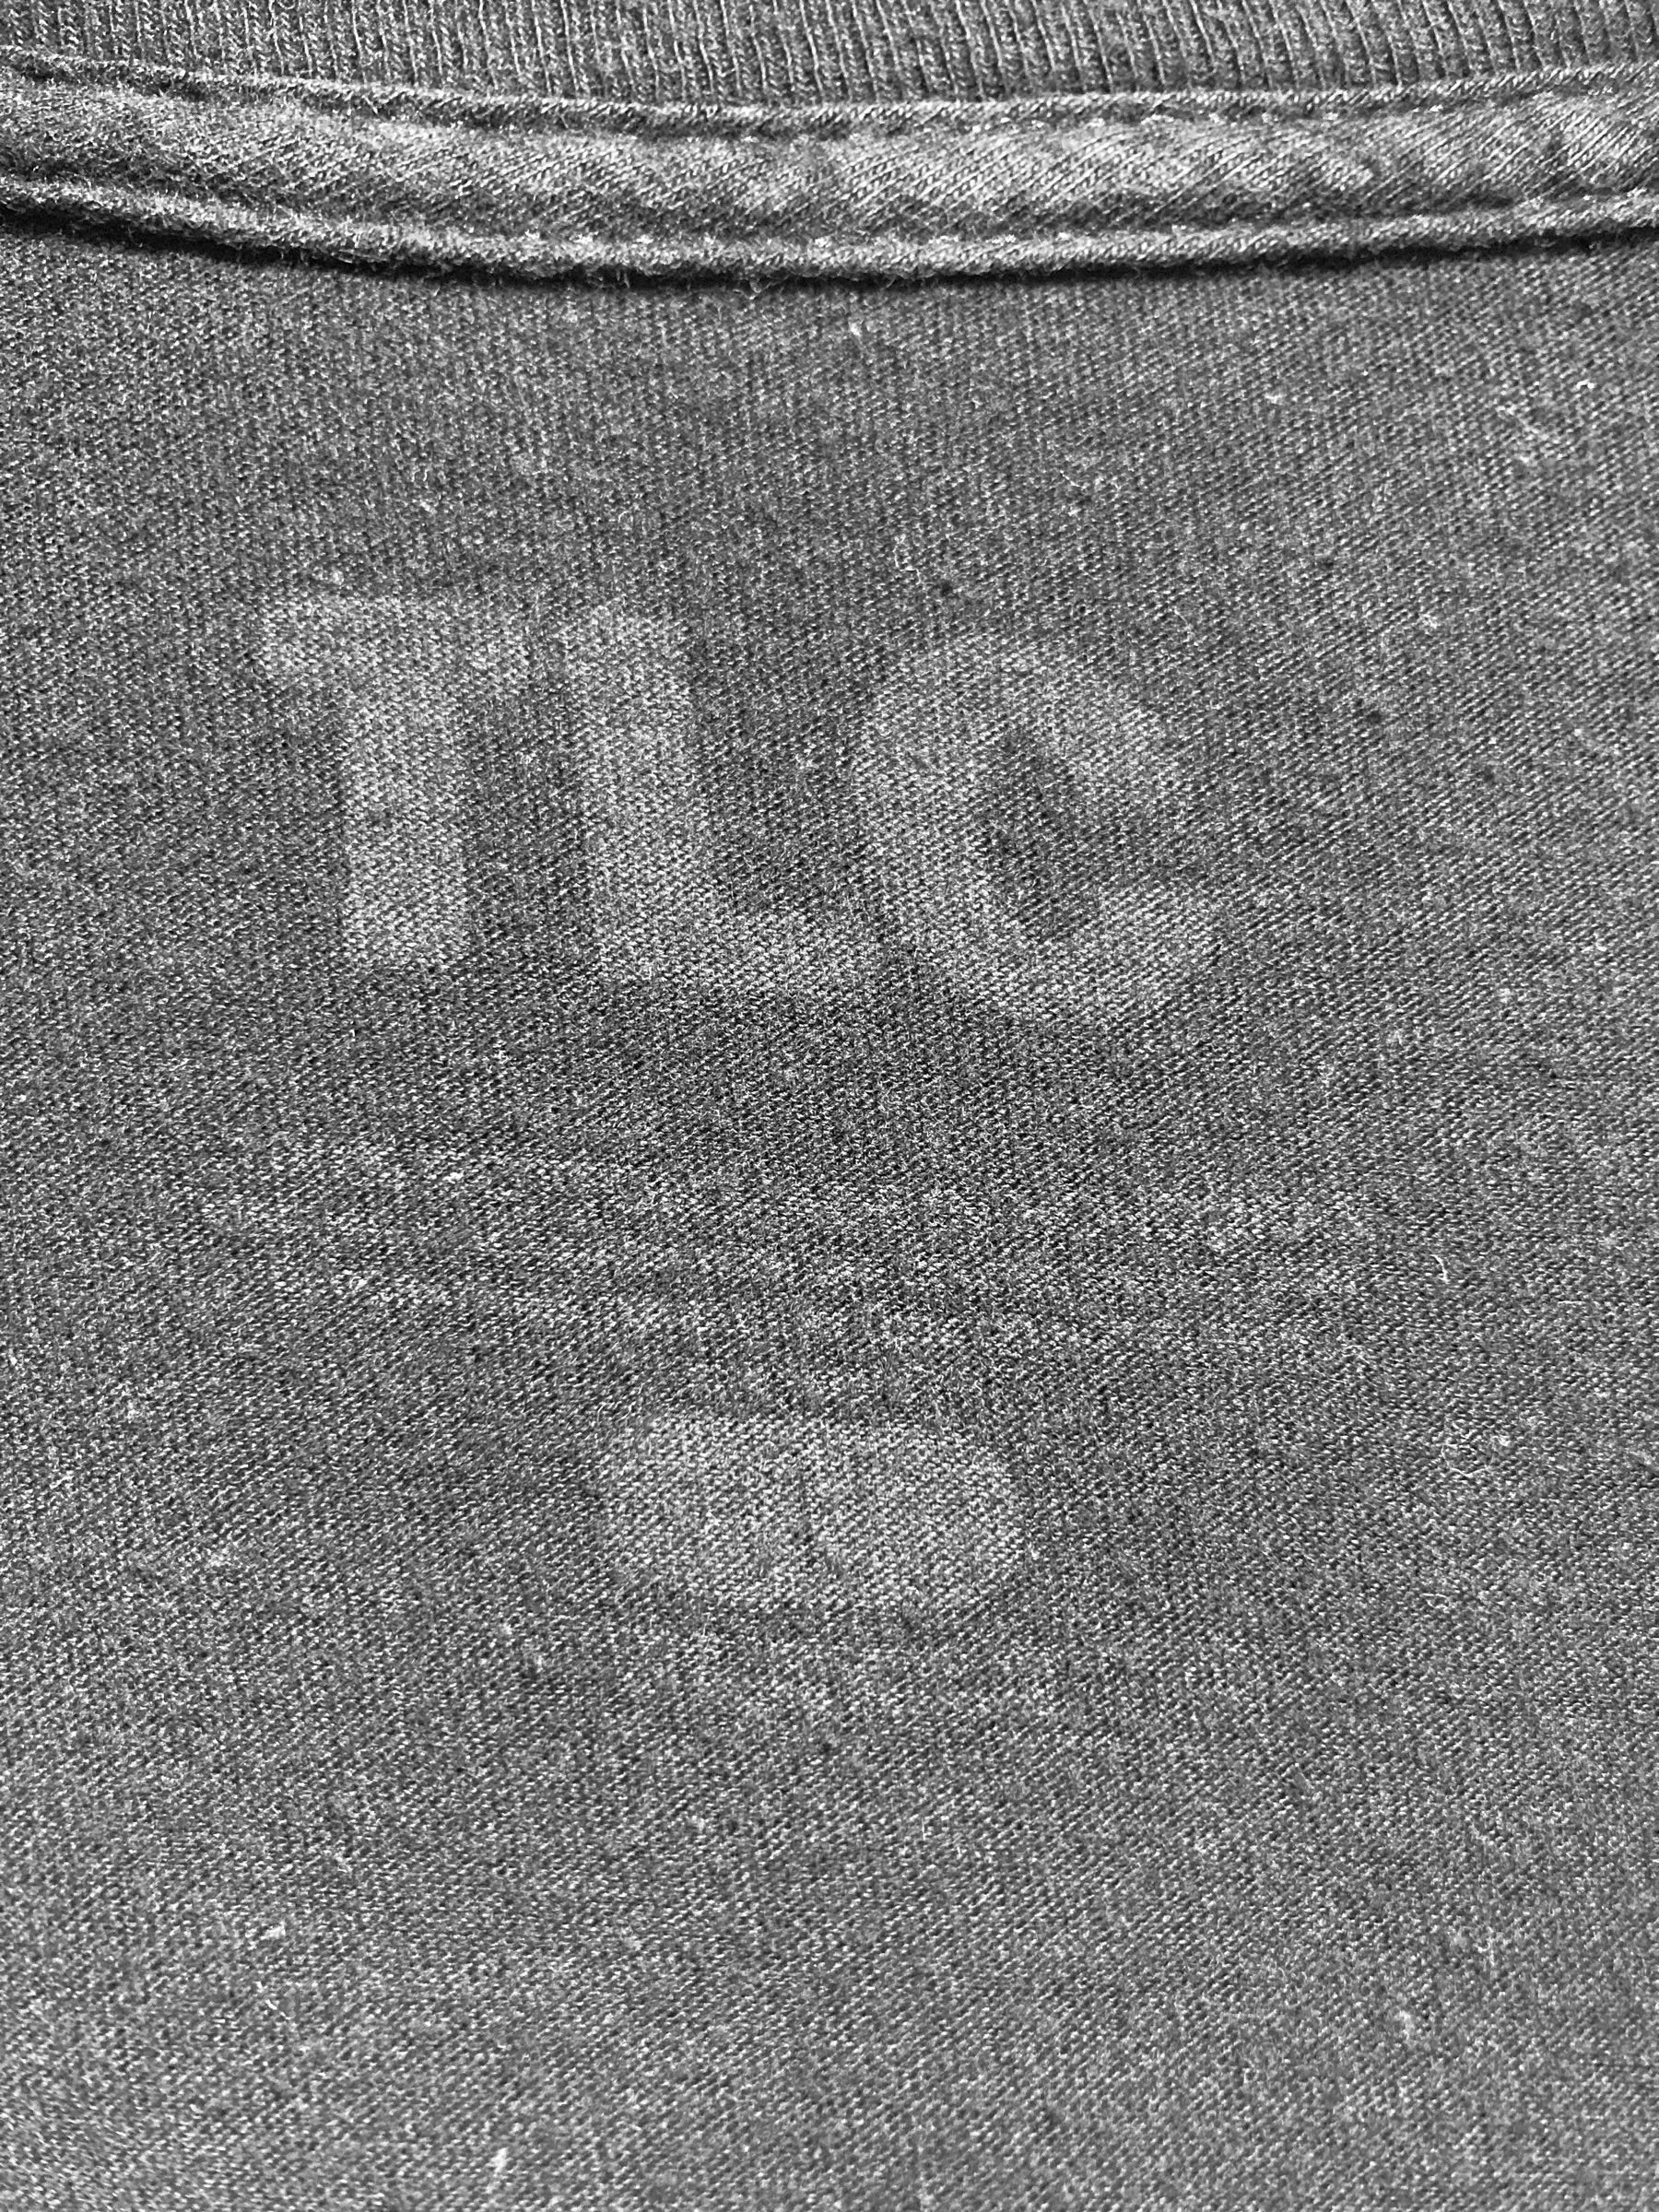 TLC ティーエルシー HIPHOP オフィシャル ラップTシャツ ラッパーTシャツ アーティストTシャツ